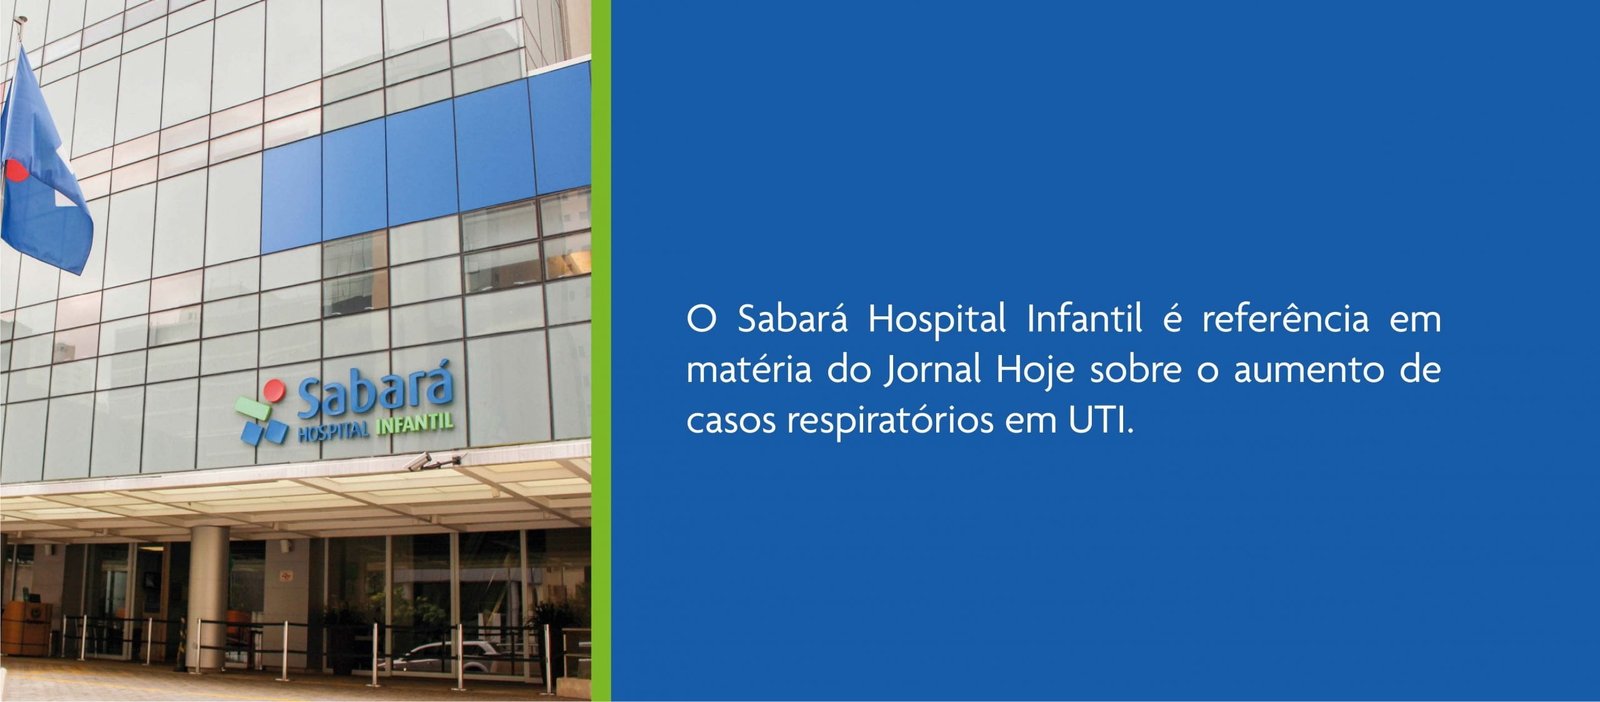 Sabará Hospital Infantil é Referência Em Matéria Do Jornal Hoje Hospital Sabará 5893